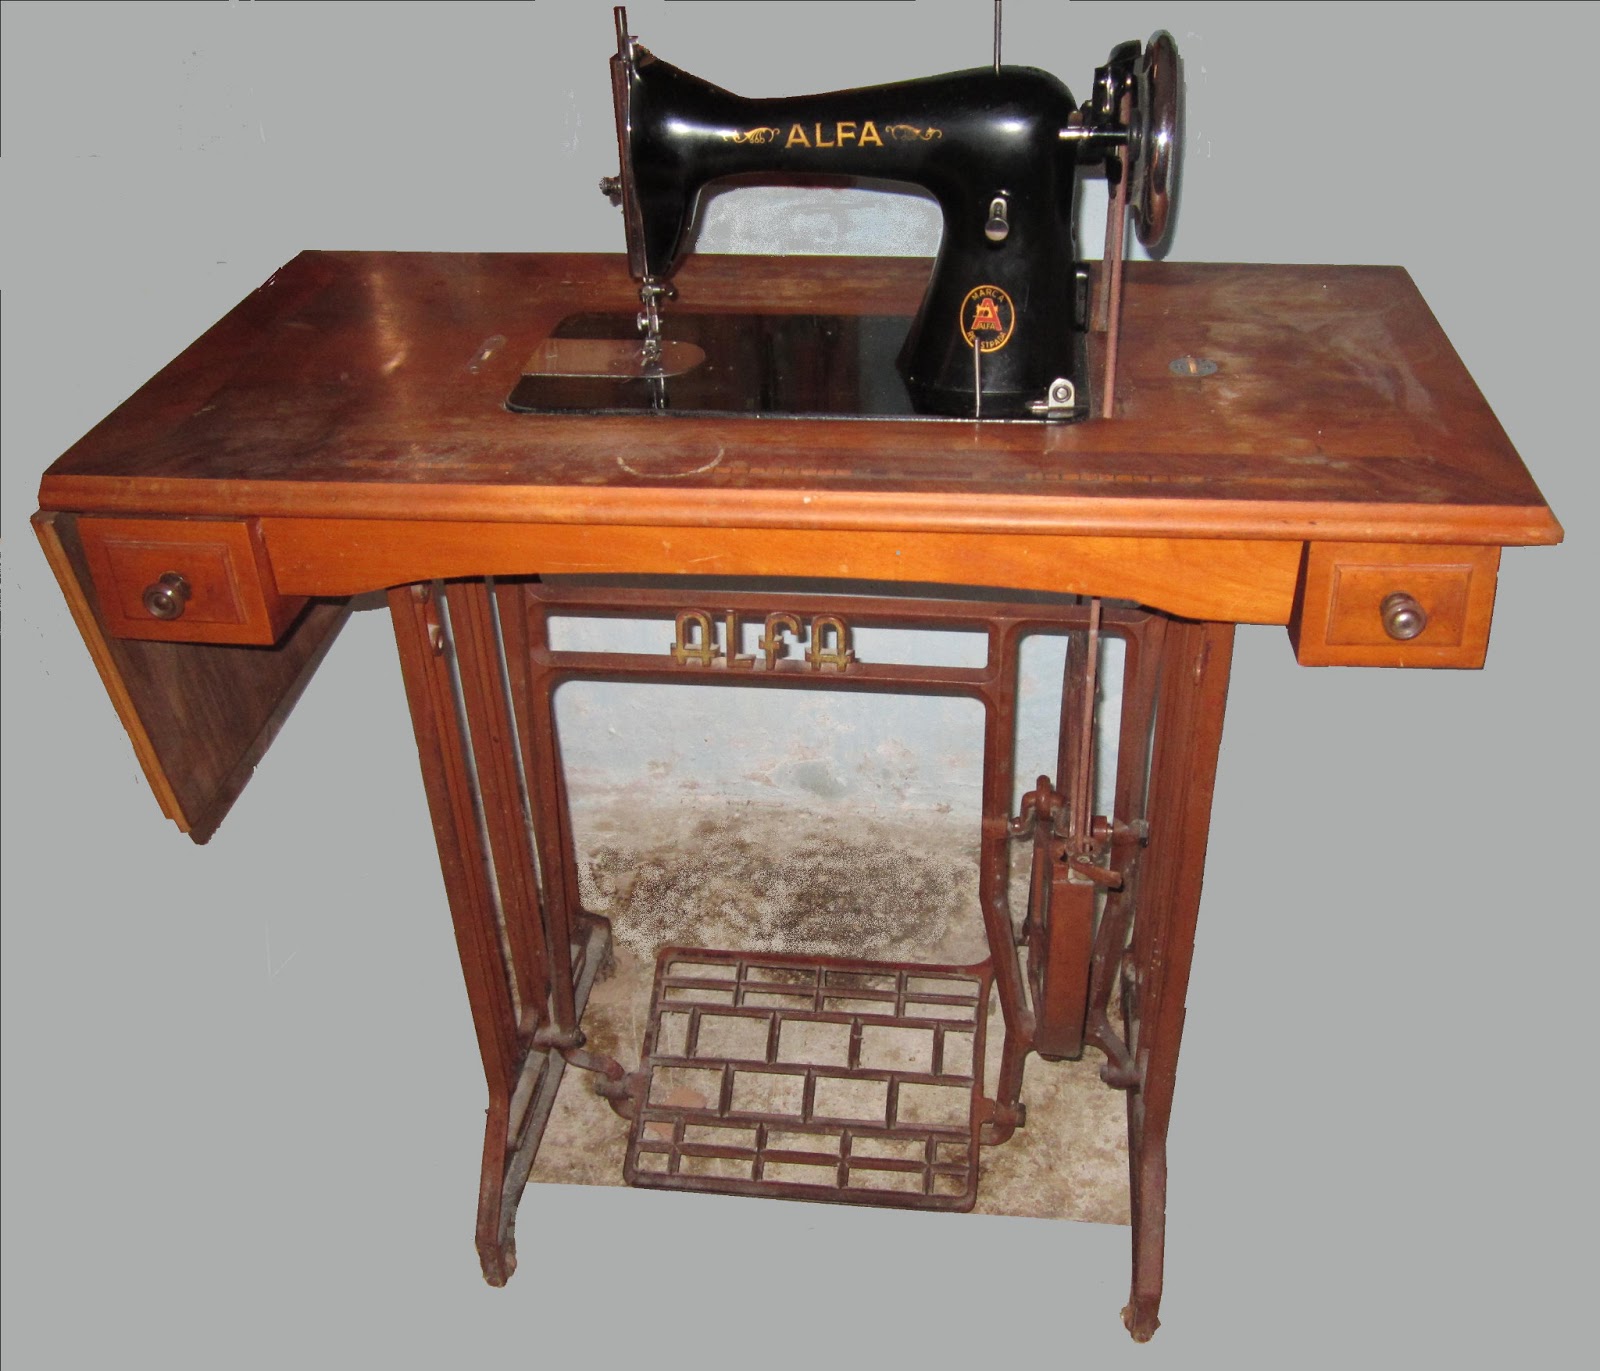 Mis experiencias mis imágenes: Máquina de coser antigua, Alfa.